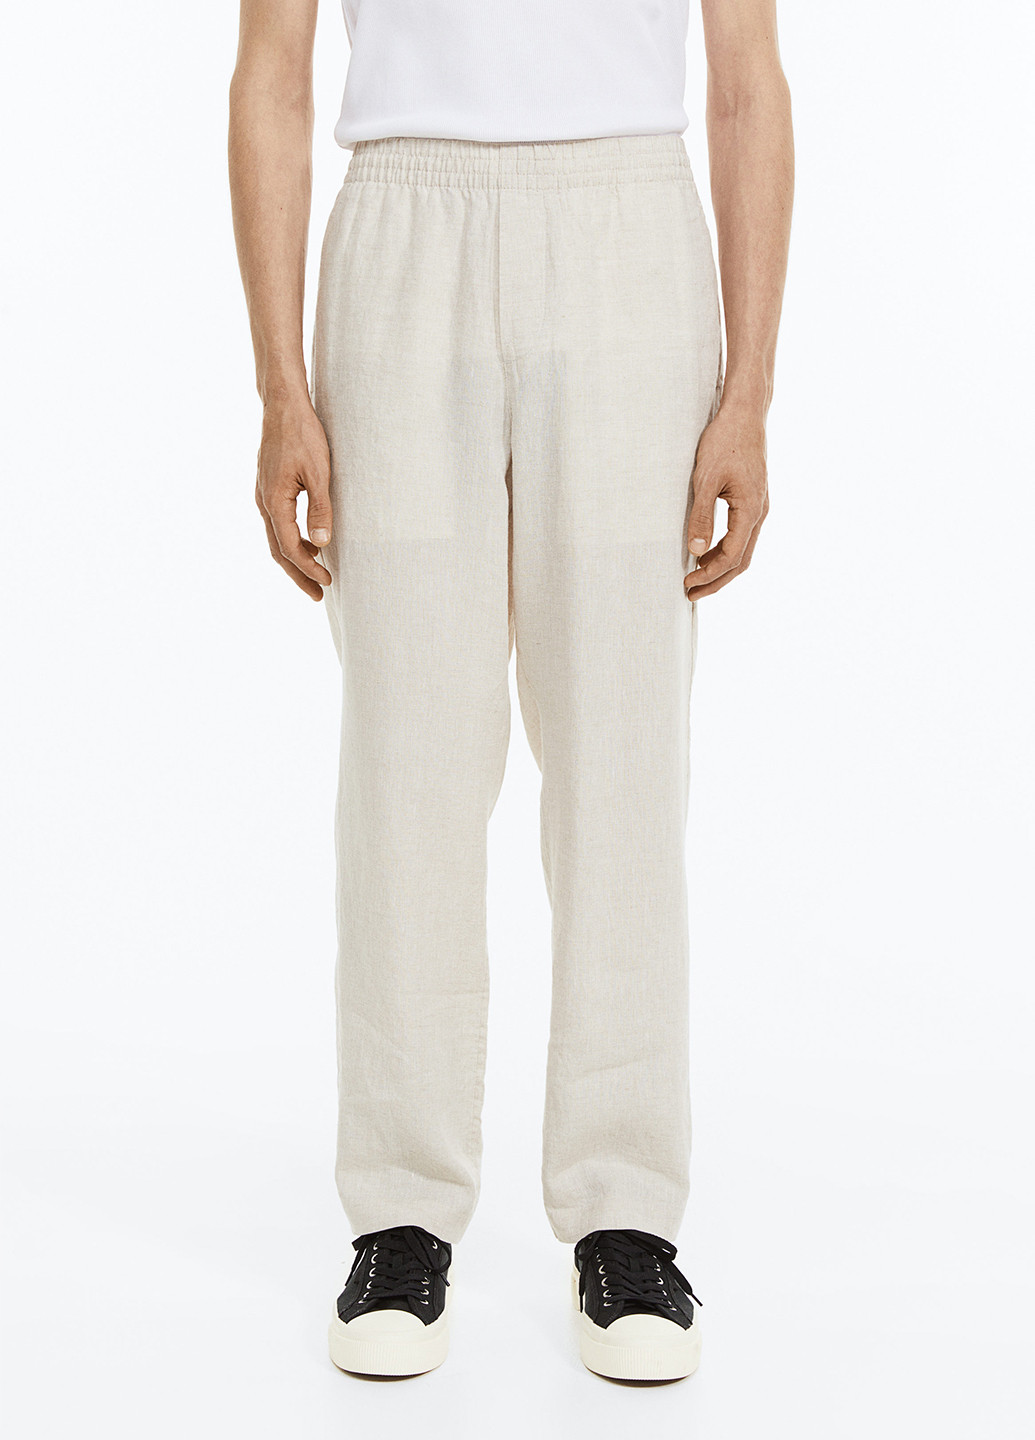 Молочные кэжуал демисезонные прямые брюки H&M